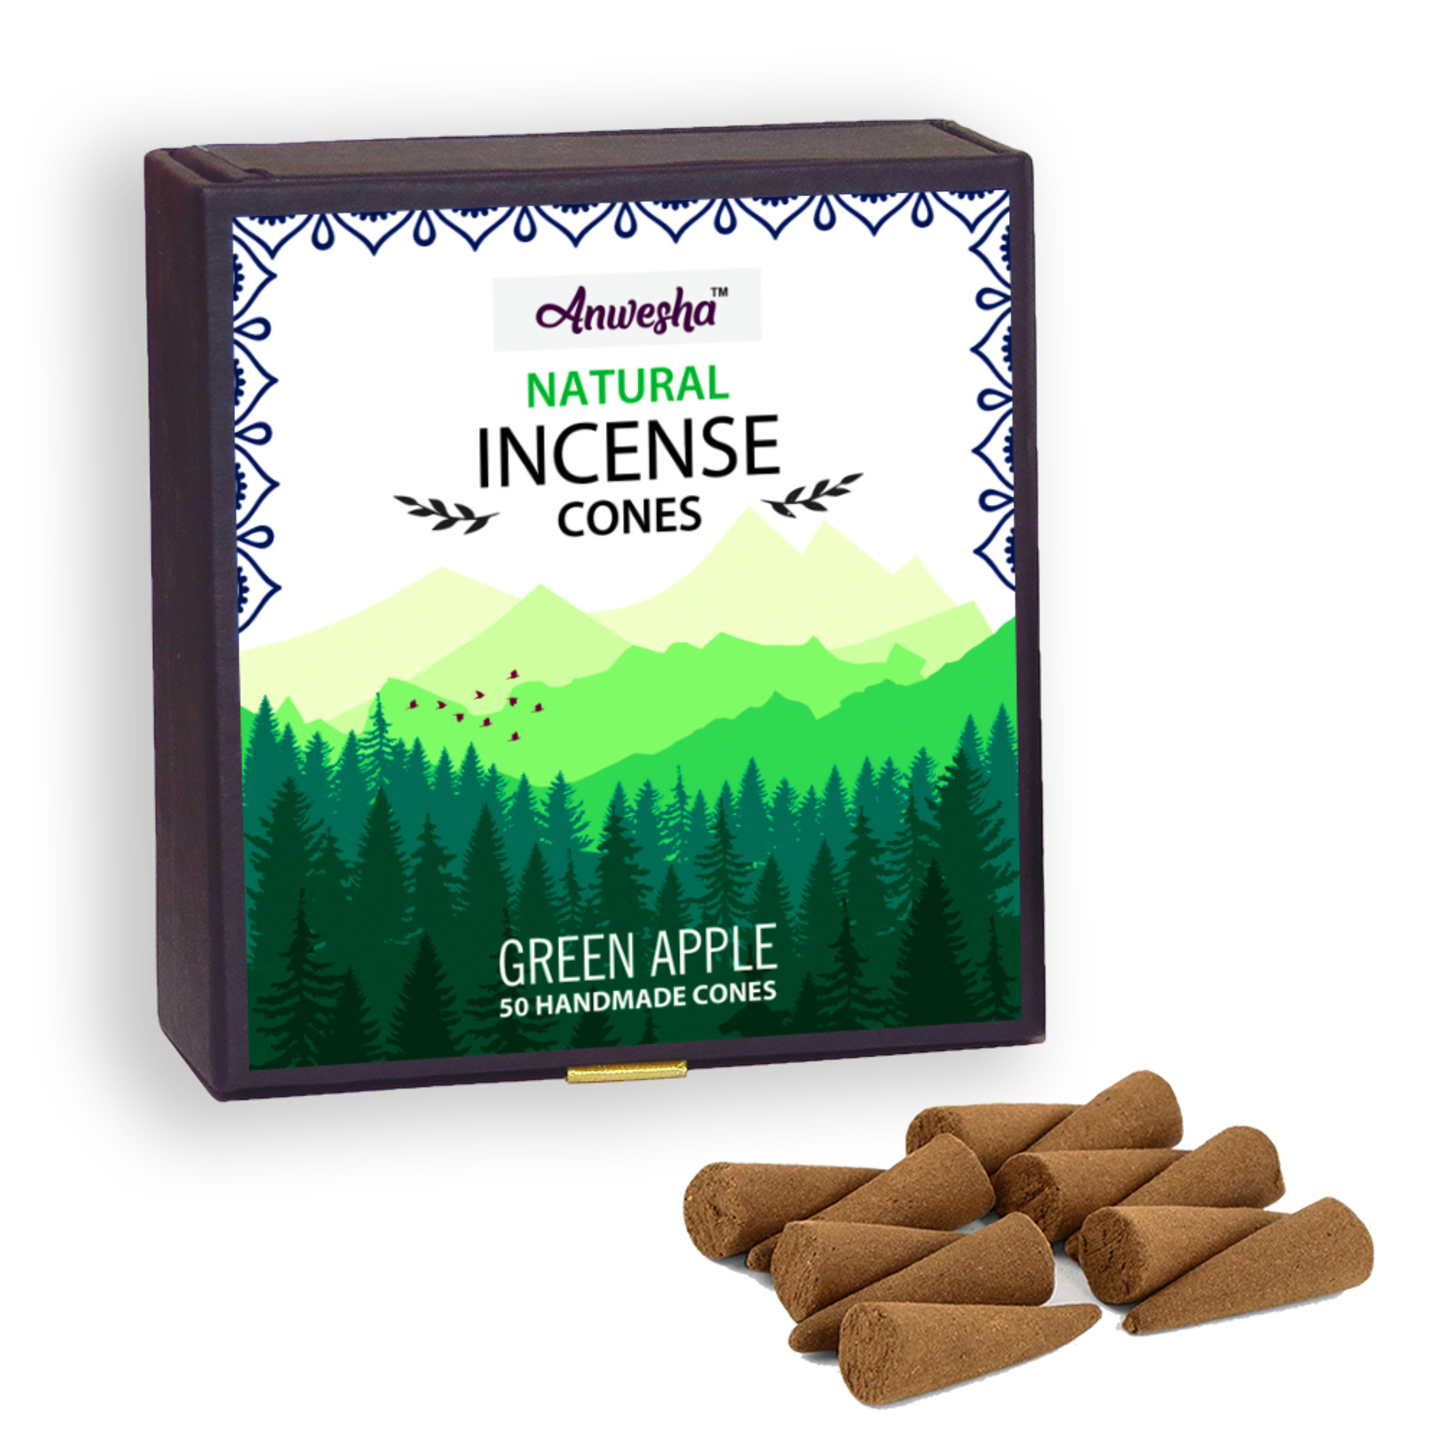 Green Apple Incense Cones Box - 50 Cones